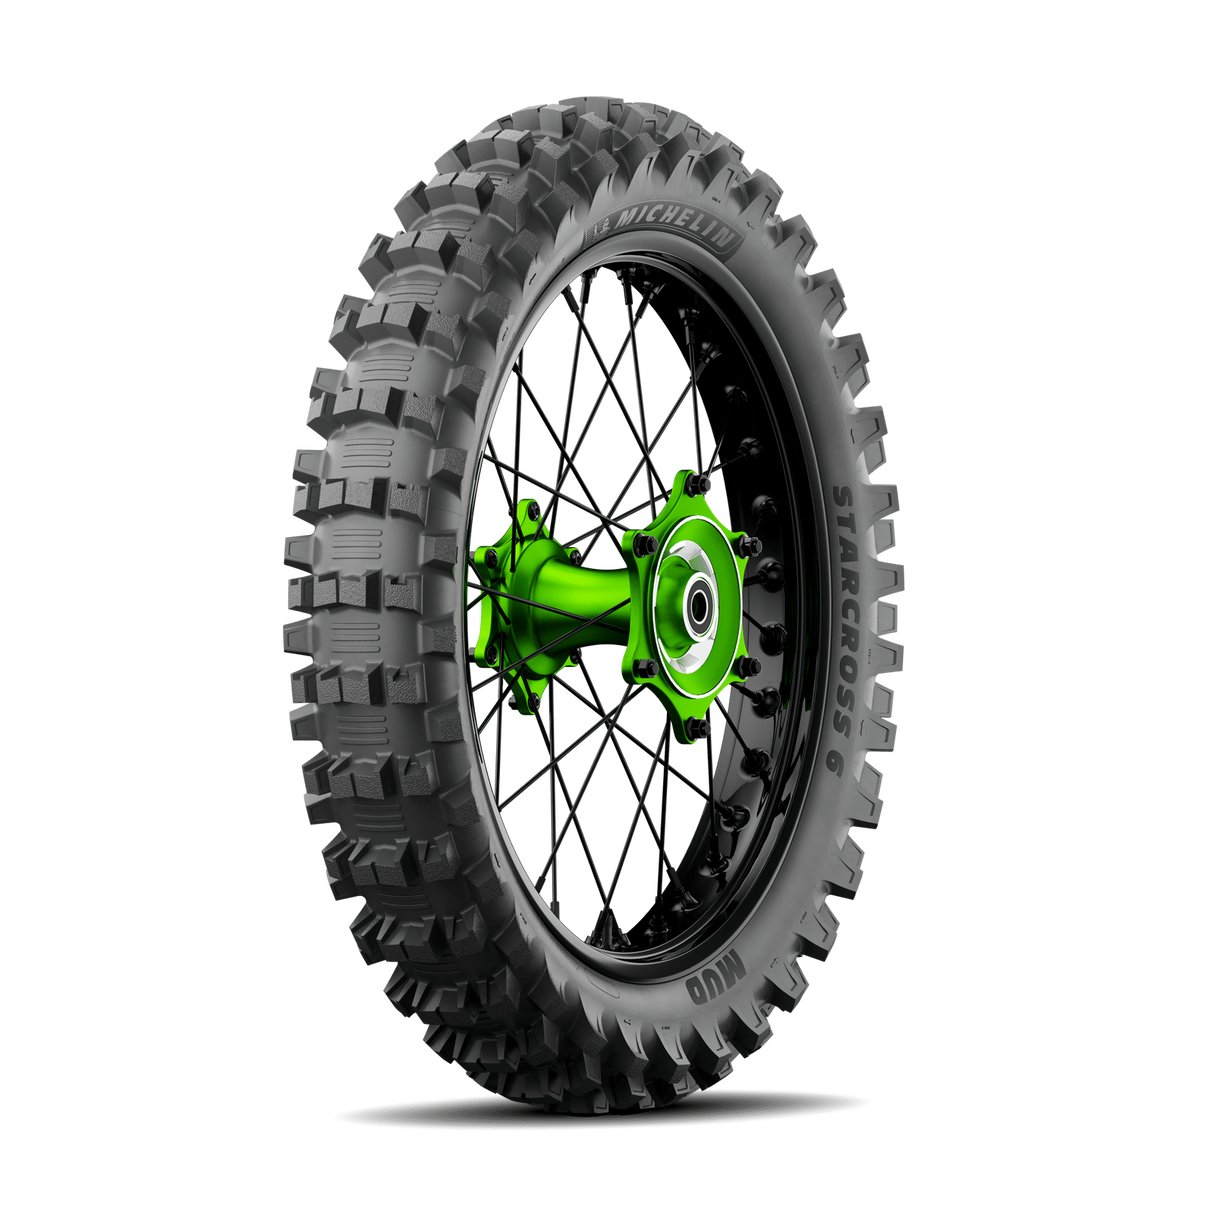 Michelin Starcross 6 Mud 110/90-19 TT Rear Tyre